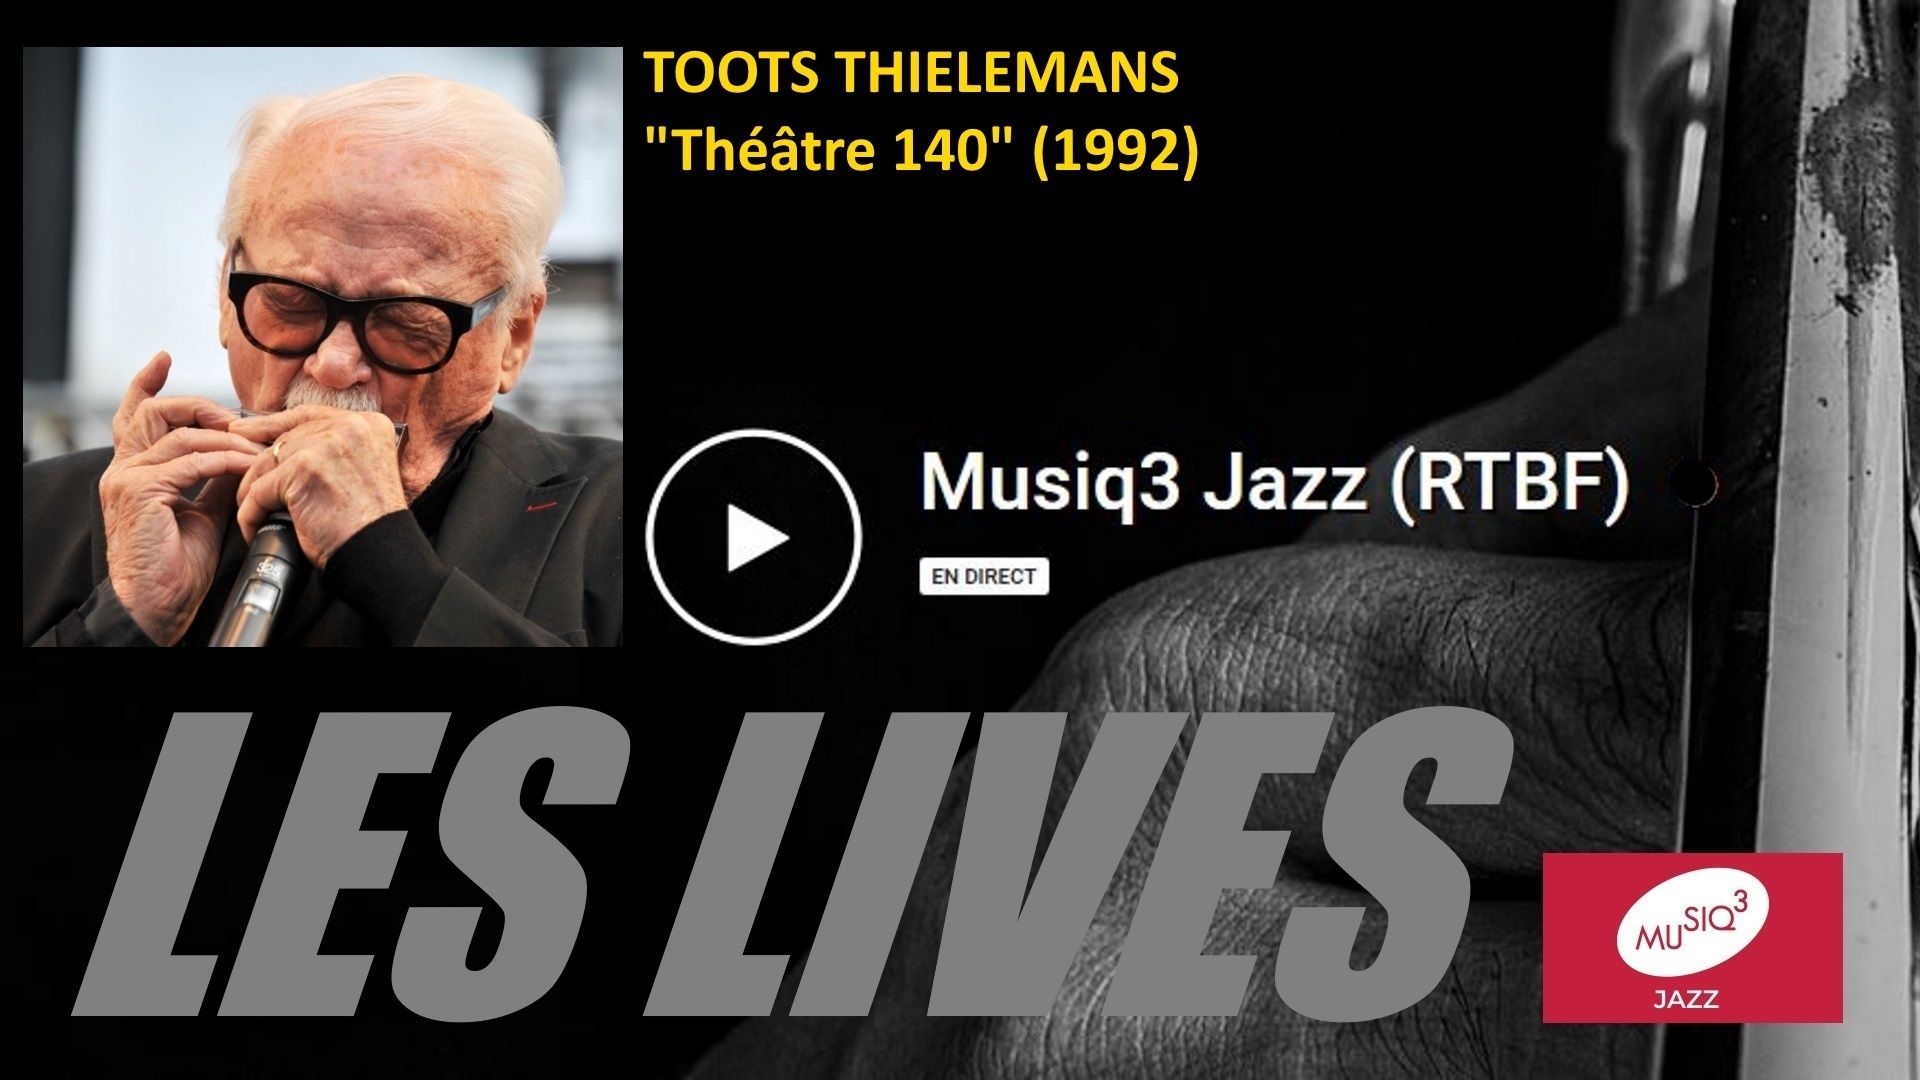 Les lives : Toots Thielemans (Théâtre 140, 1992)